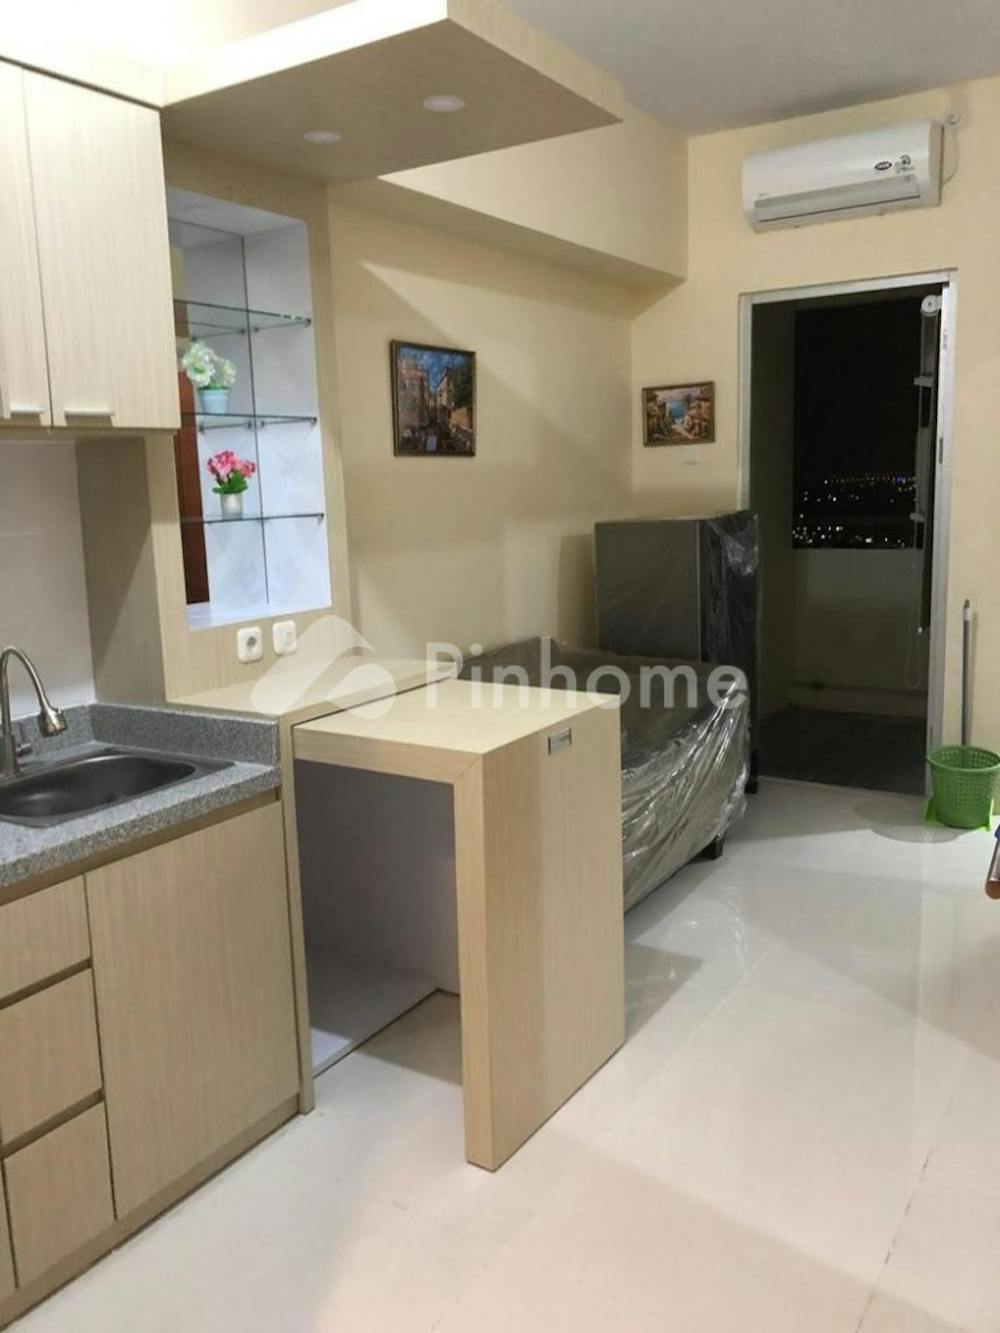 Disewakan Apartemen Harga Terbaik di Apartemen Gunawangsa Tidar, Jl. Tidar No.350, Luas 40 m², 2 KT, Harga Rp3,3 Juta per Bulan | Pinhome